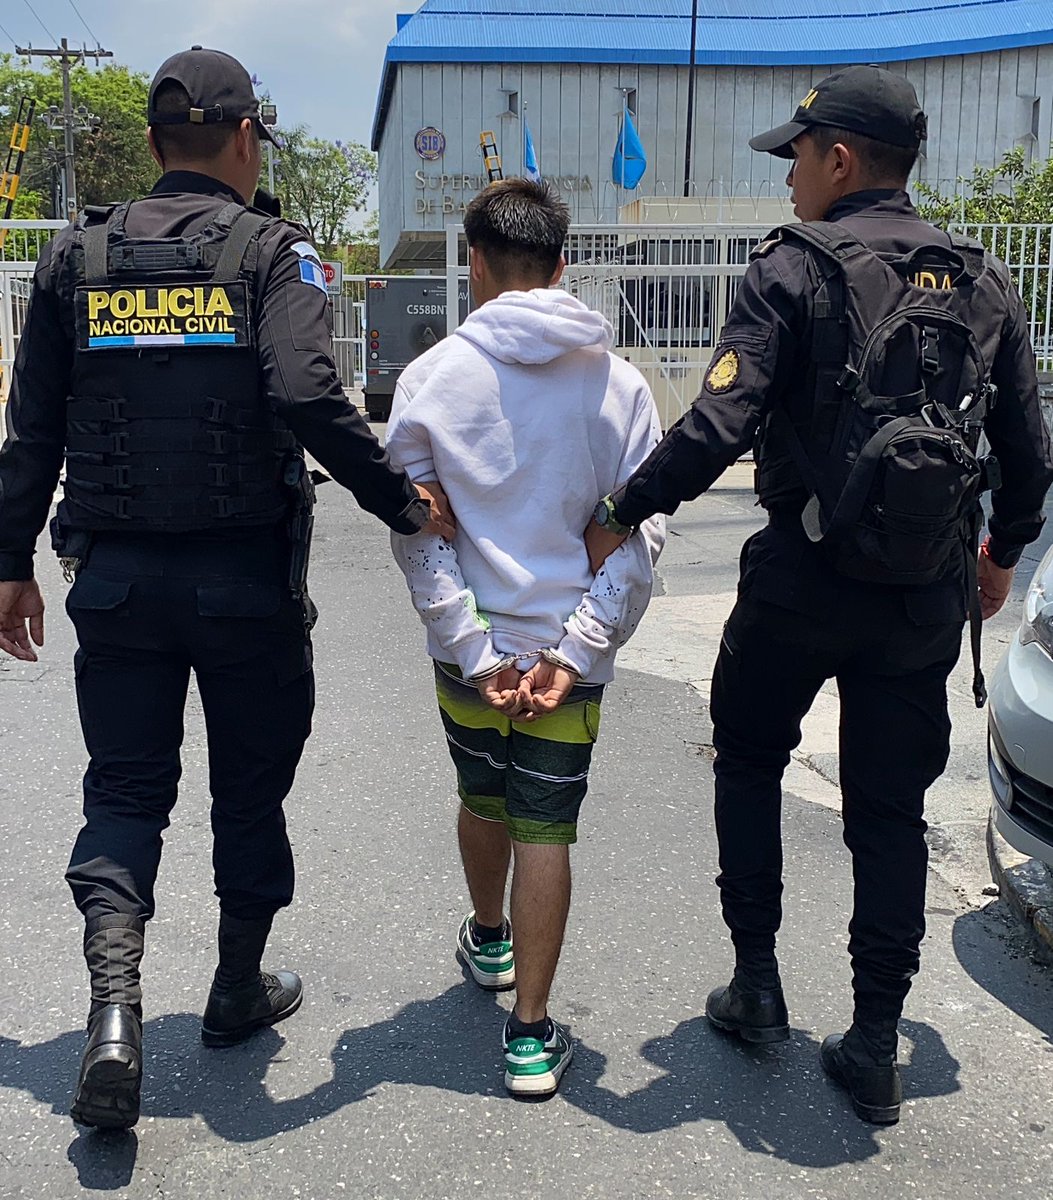 Presunto marero salvatrucha es capturado por extorsión

En zona 1, investigadora de #DIPANDA capturaron a César “N” de 18 años, es requerido por un juzgado de Guatemala por el delito de extorsión.

Suman 567 capturas por extorsión en este año.

¡No hay mañana, #LaSeguridadEsHoy!